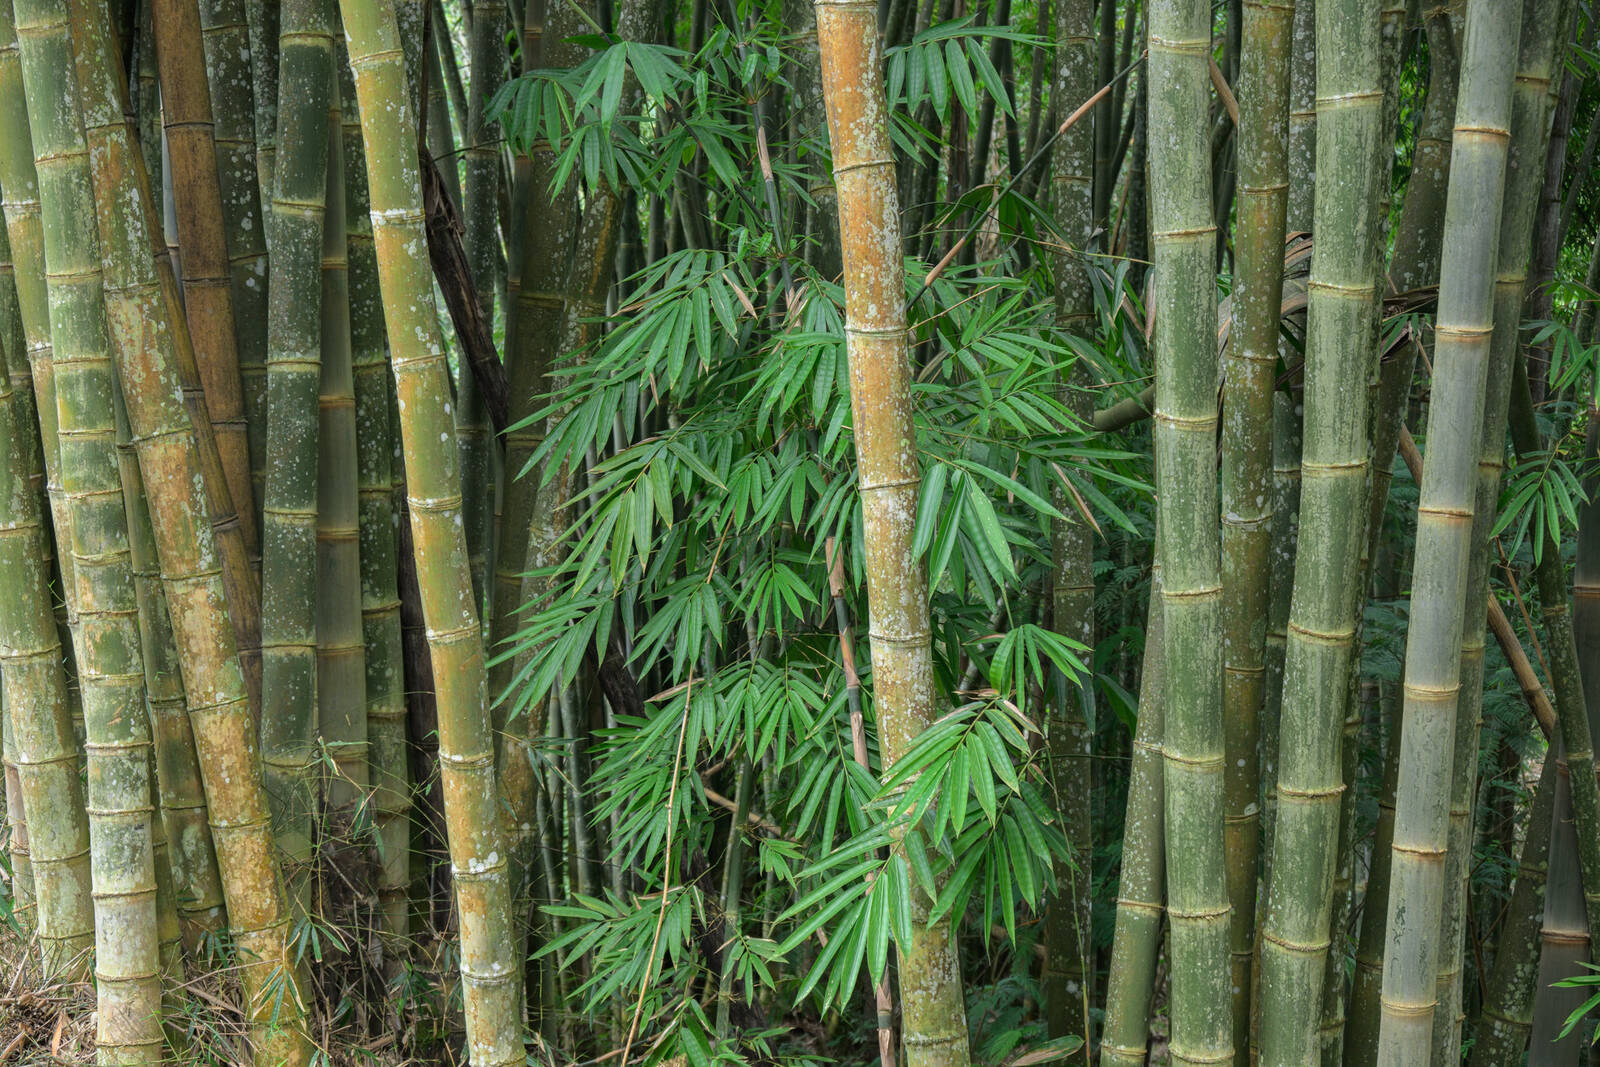 Image of Bamboo Forest near Bajawa by Luka Esenko